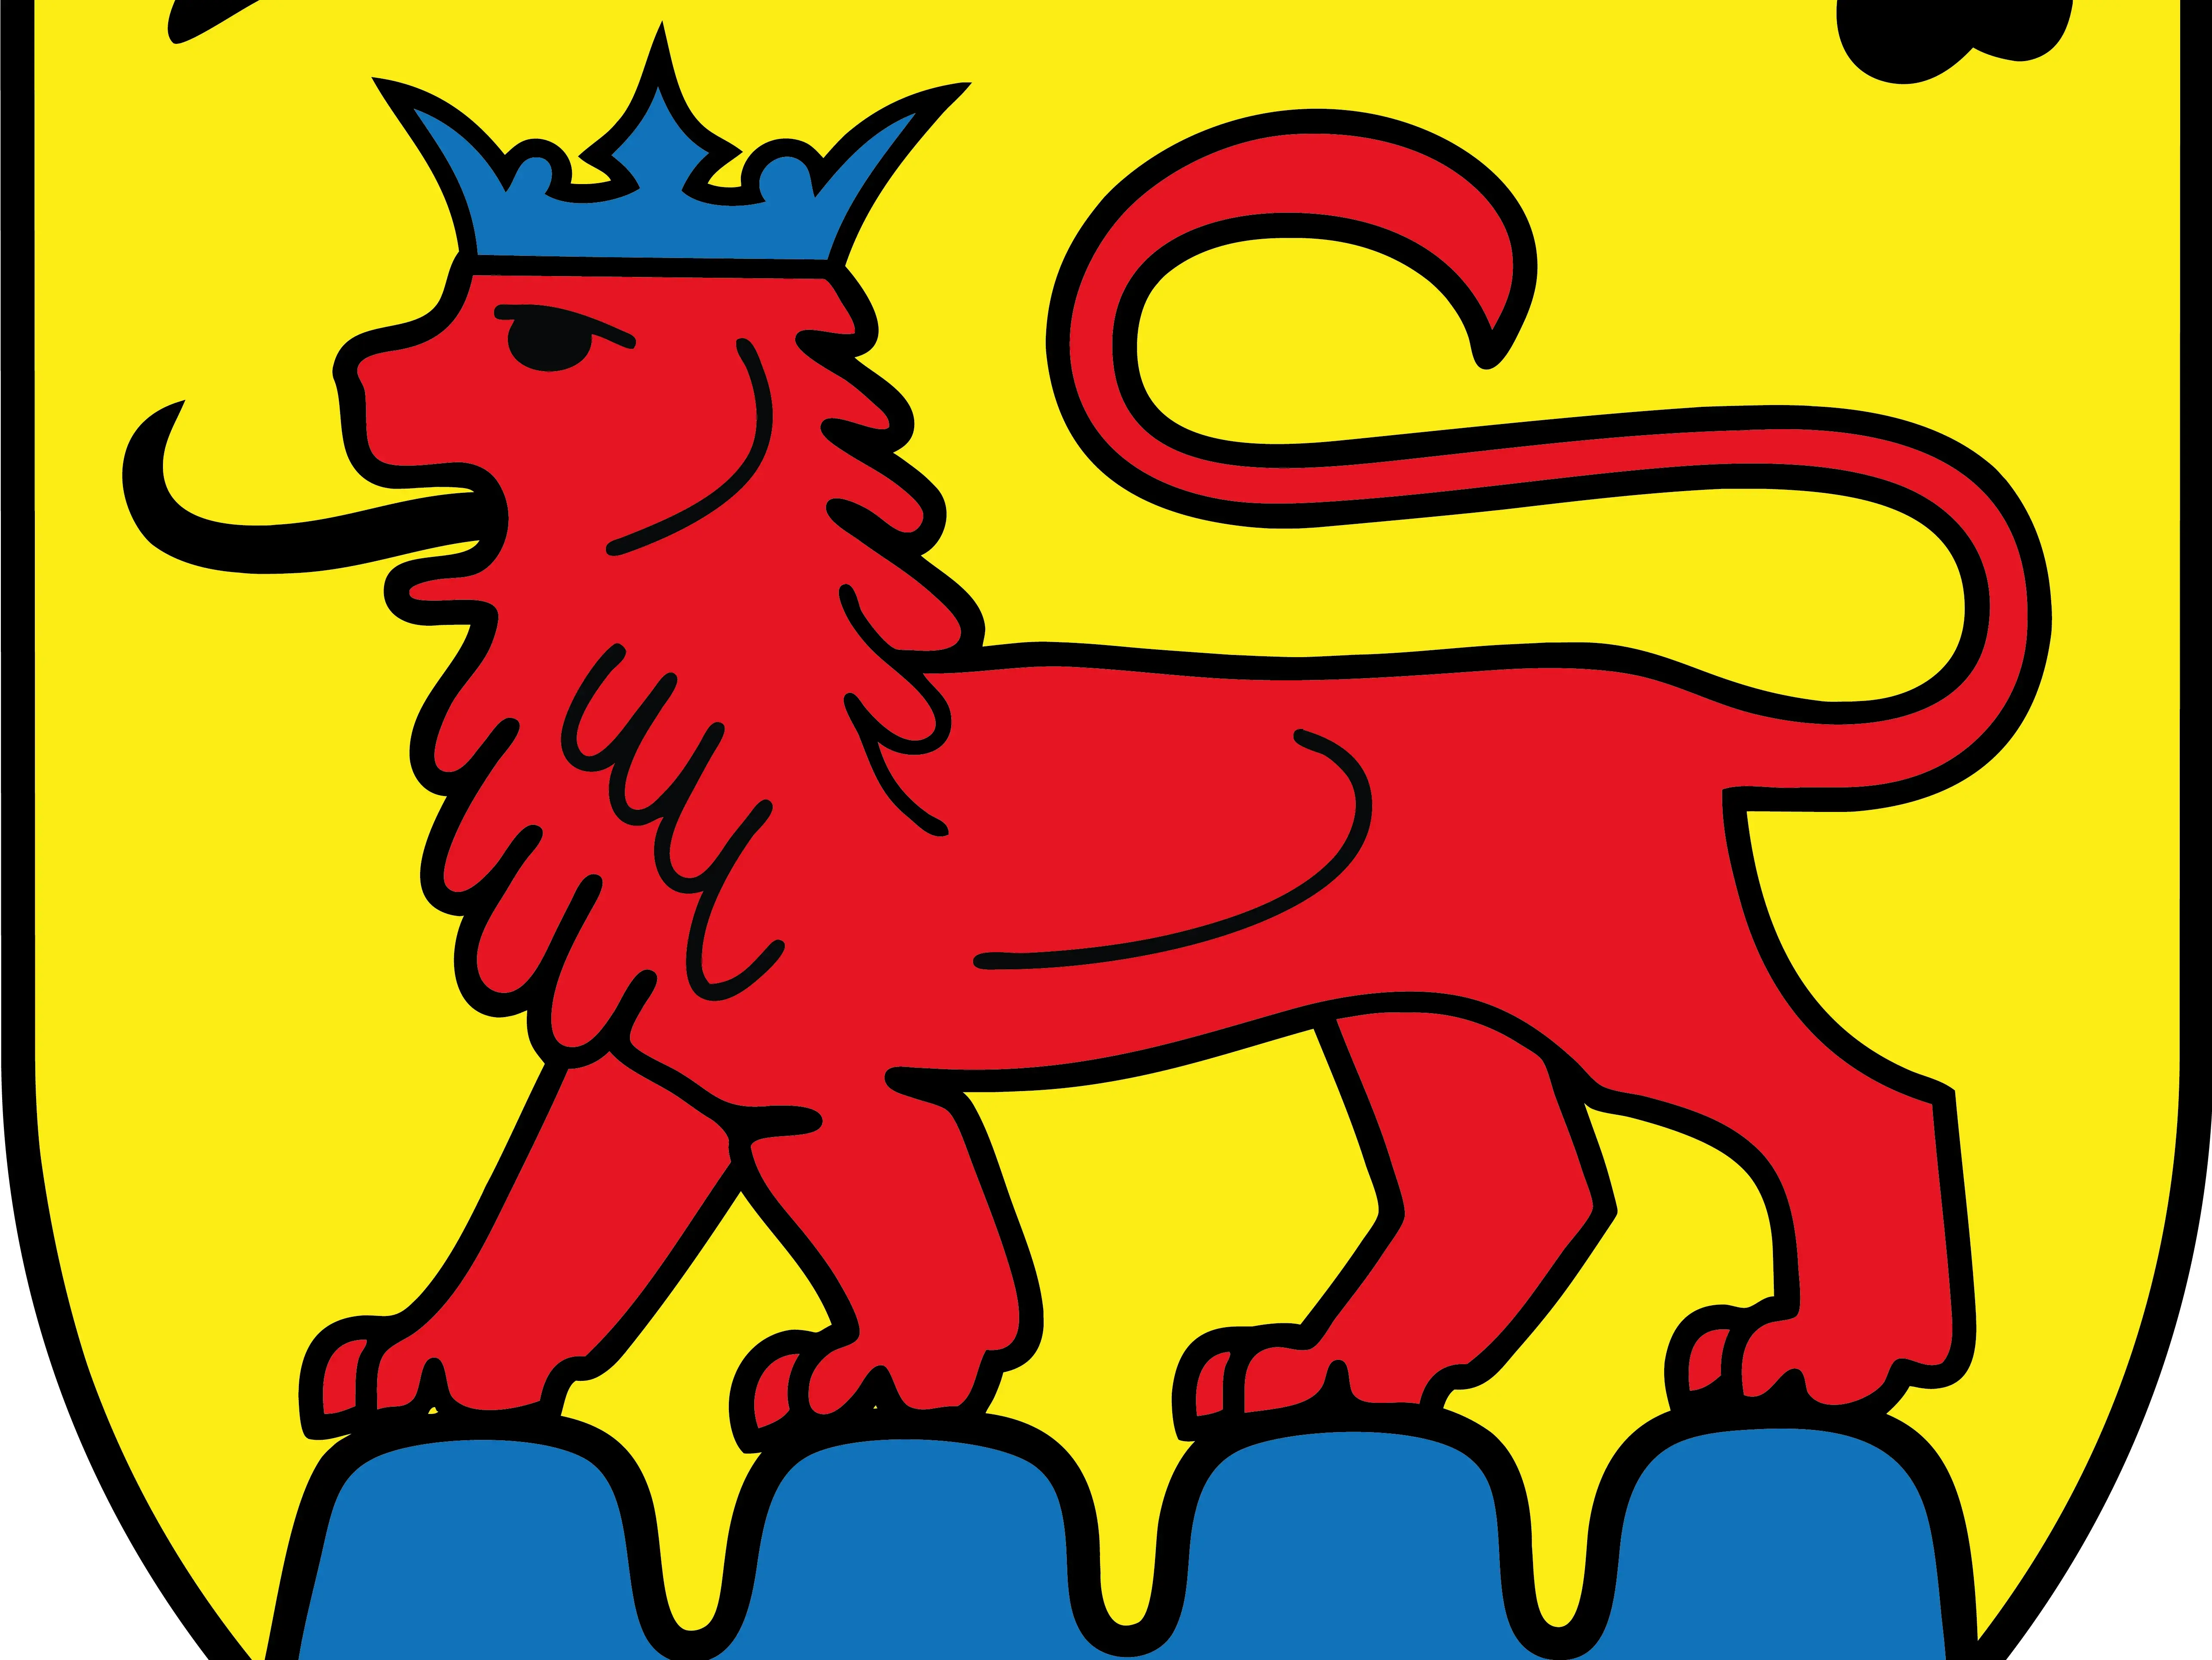 Wappen Stadt Vaihingen an der Enz